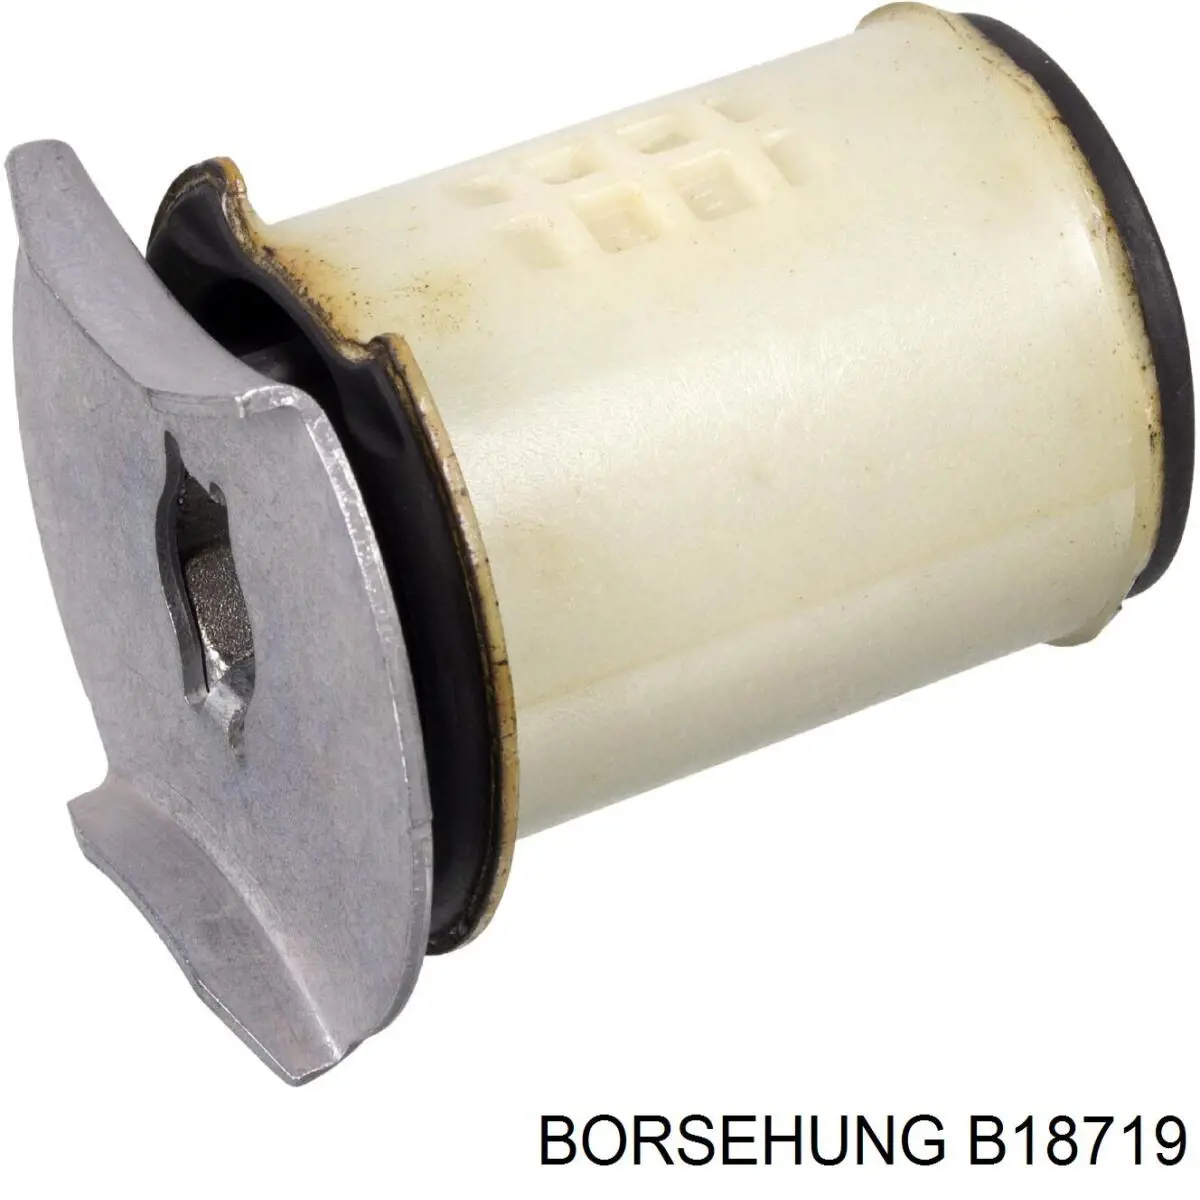 B18719 Borsehung bloco silencioso de viga traseira (de plataforma veicular)